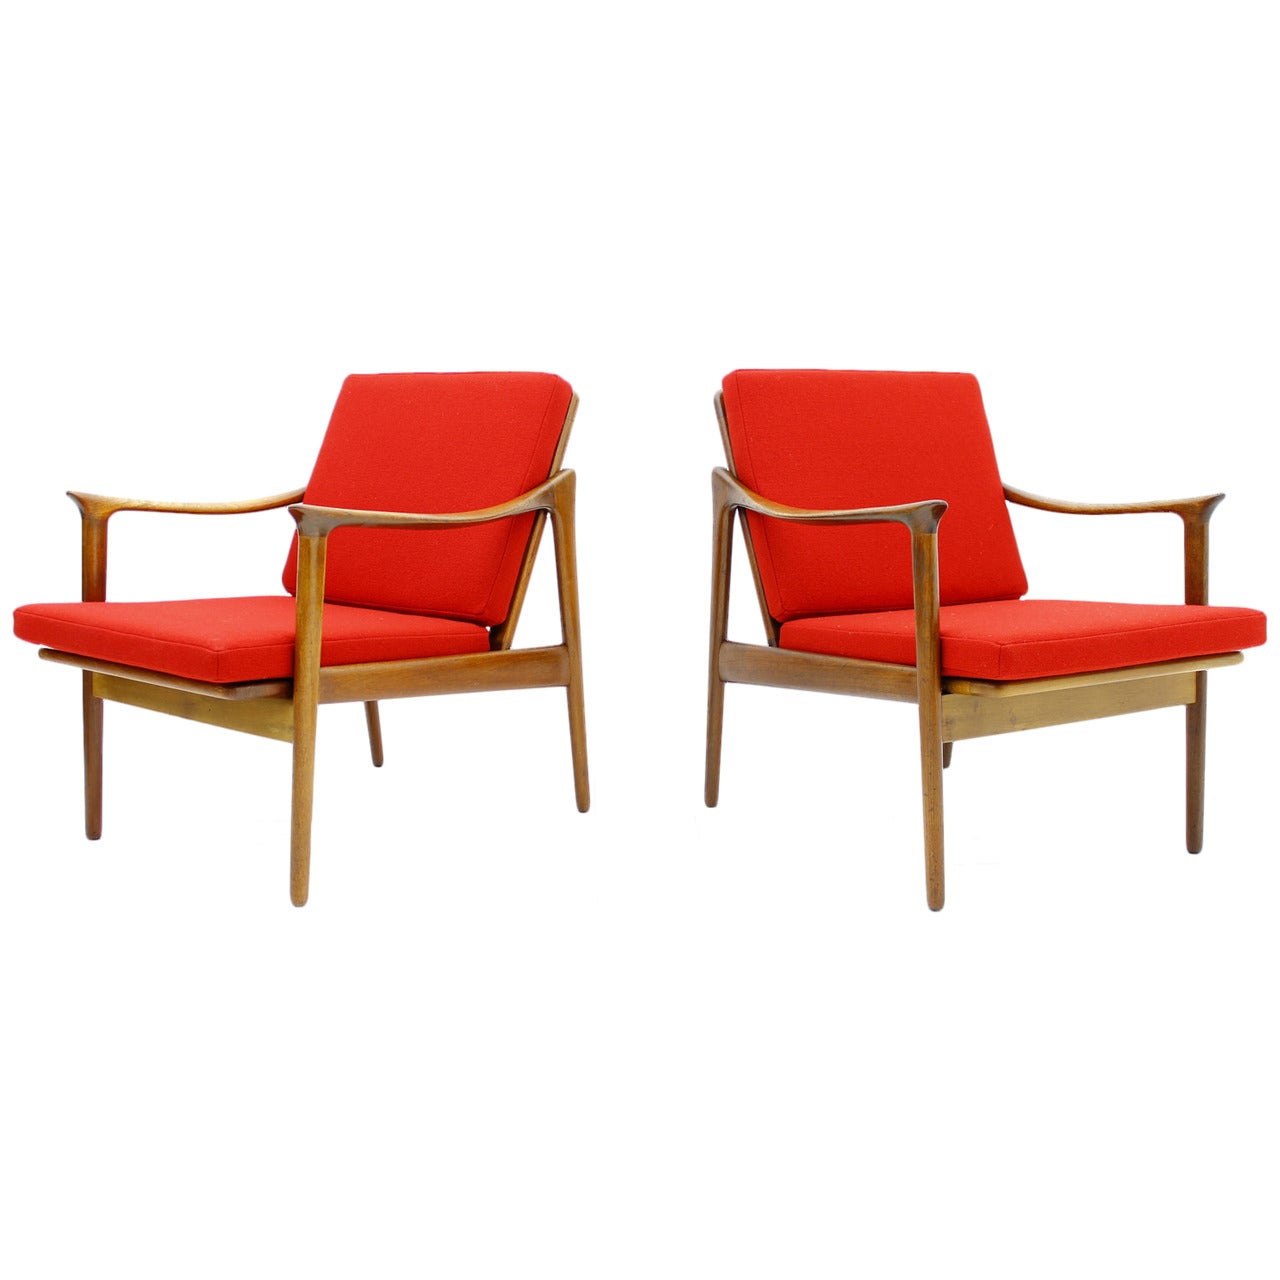 Pair of Teakwood Lounge Chairs by Fredrik Kaiser, Norway